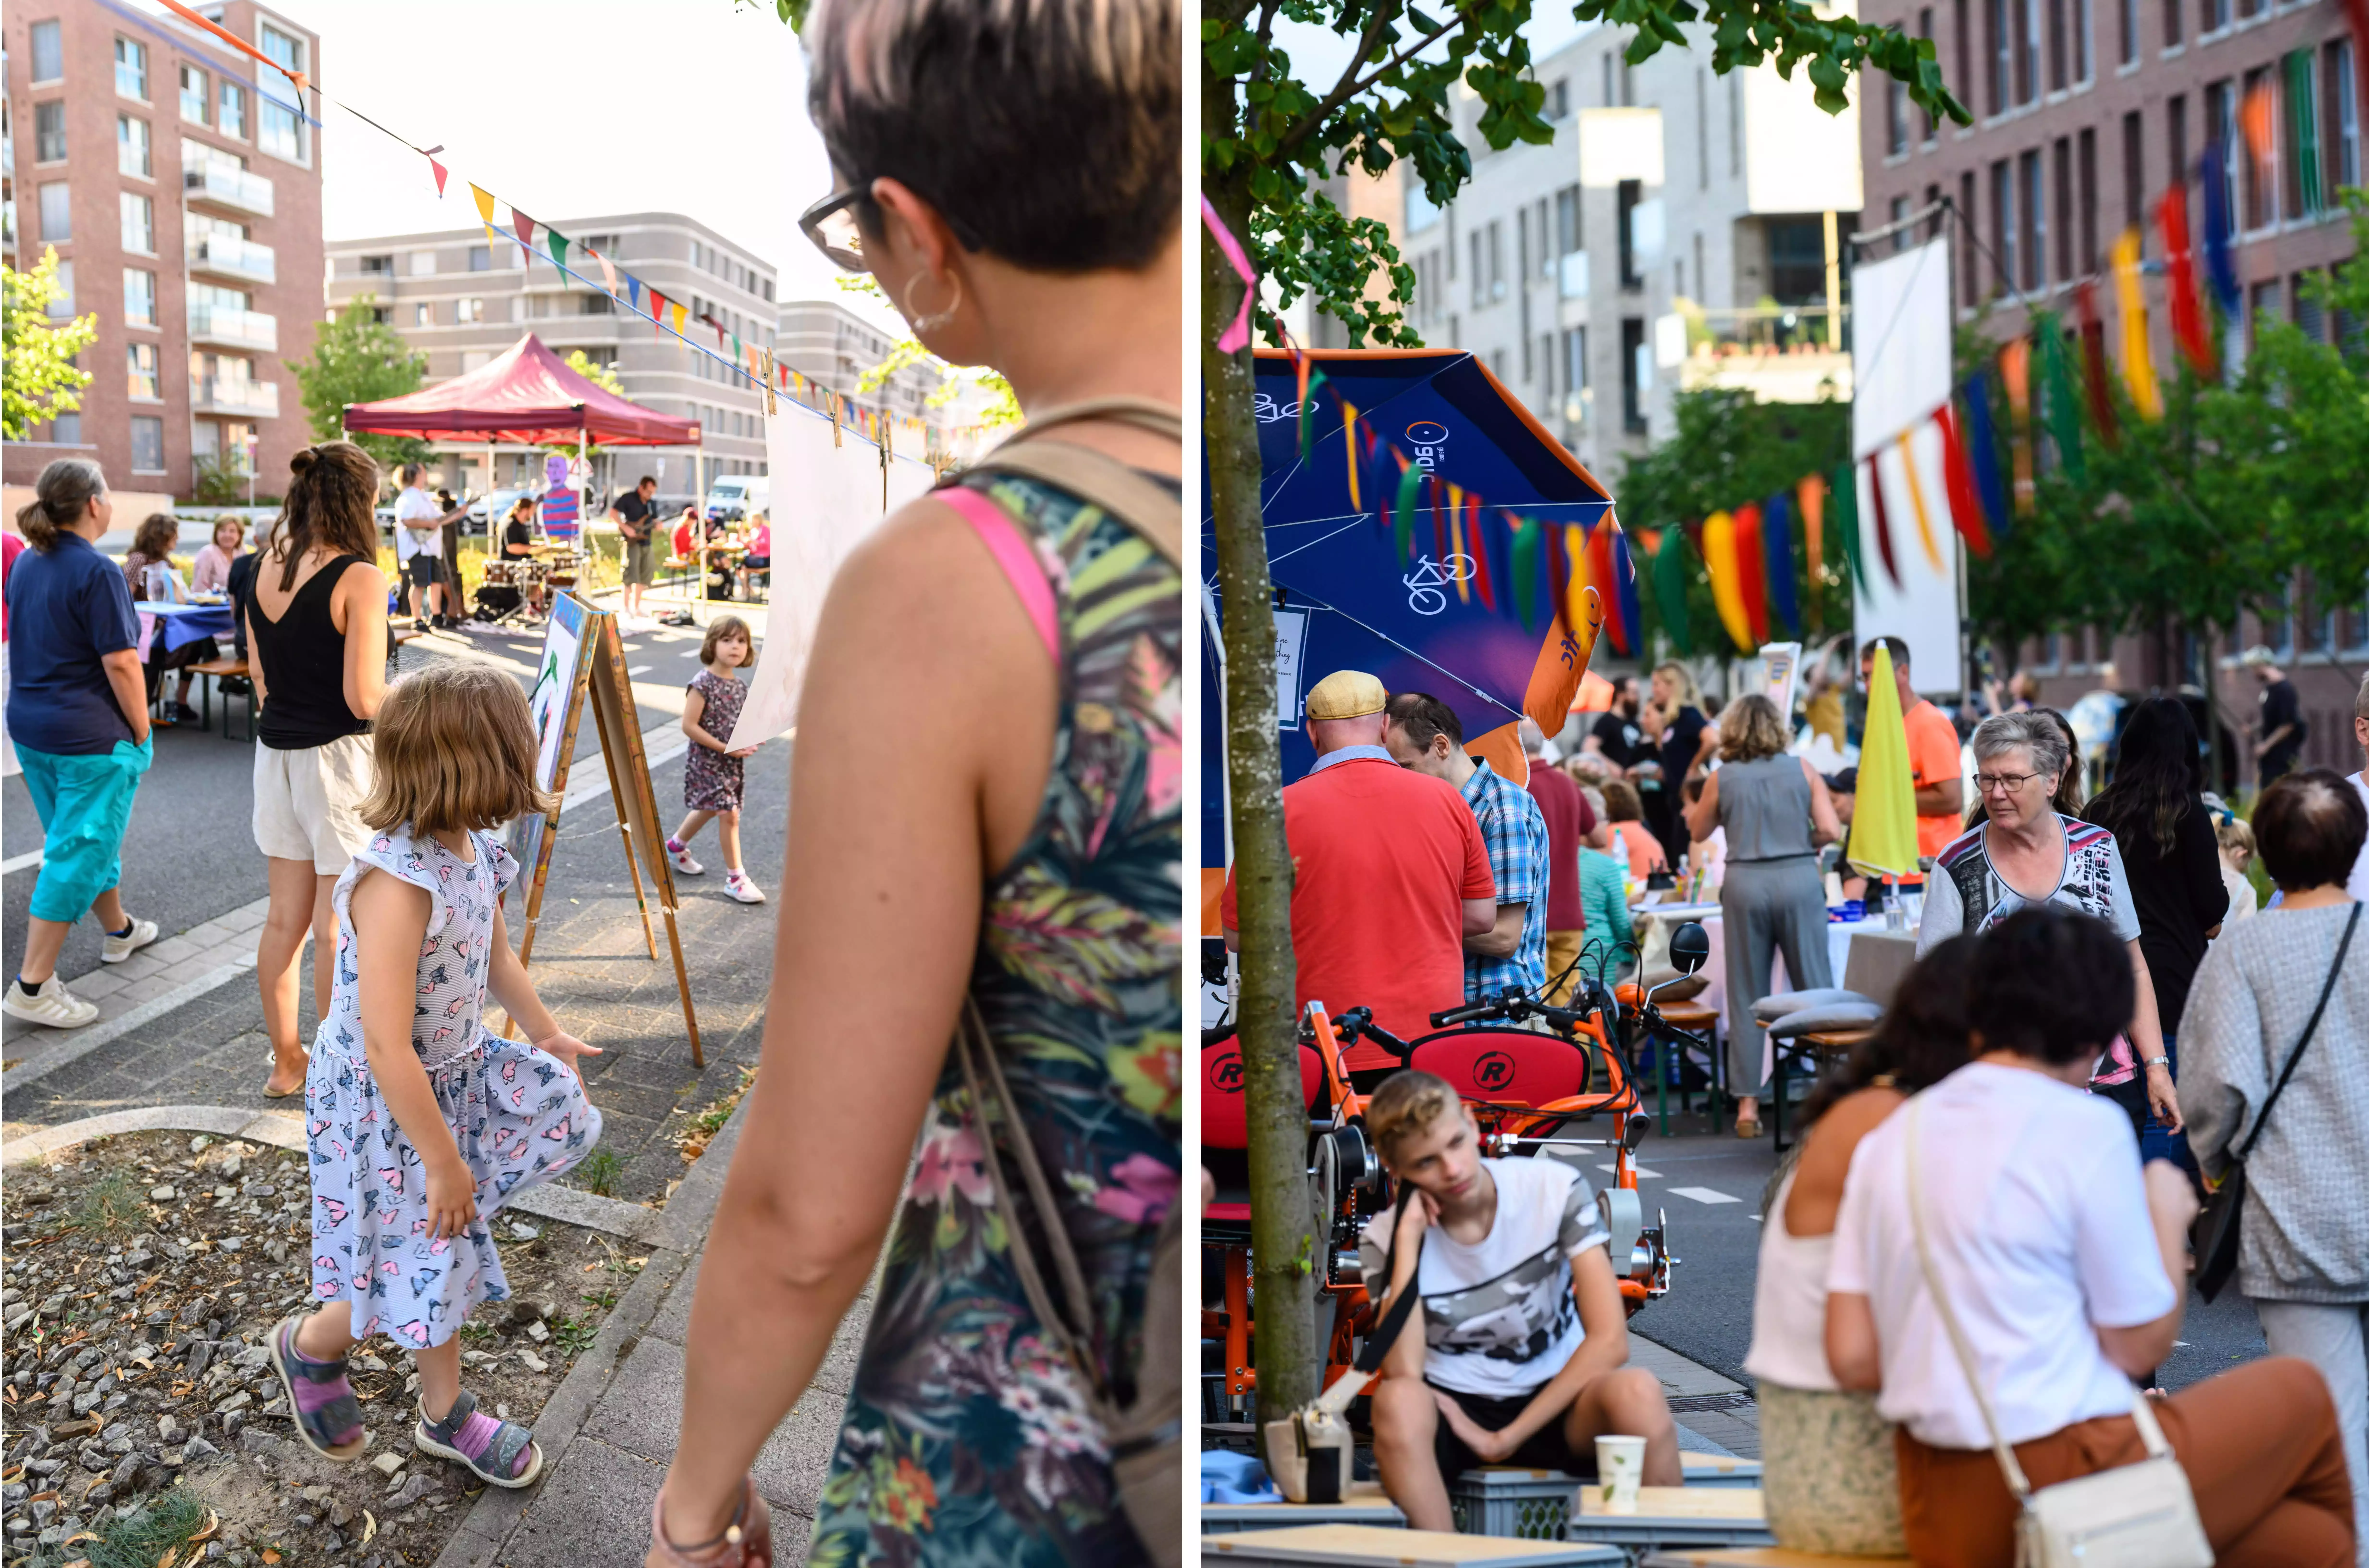 Kollage aus zwei Bildern vom Stadtfest mit spielenden Kindern und bunten Ständen